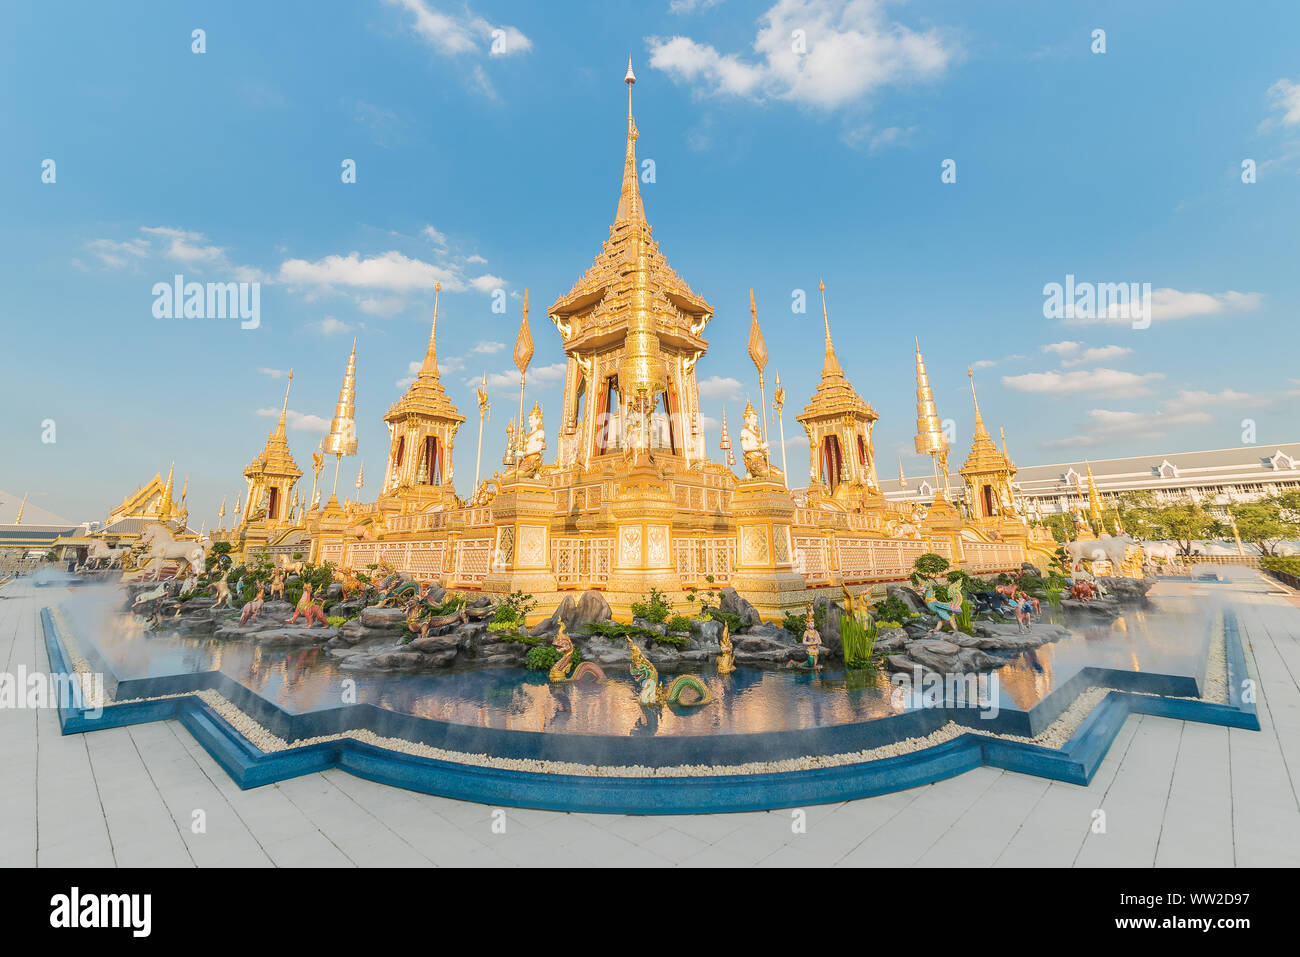 Die königliche Krematorium Replikat für König Bhumibol Adulyadej (Pra kann Ru Maat) am Sanam Luang für königliche Begräbnis Feuerbestattung Zeremonie Bangkok Thailand. Stockfoto